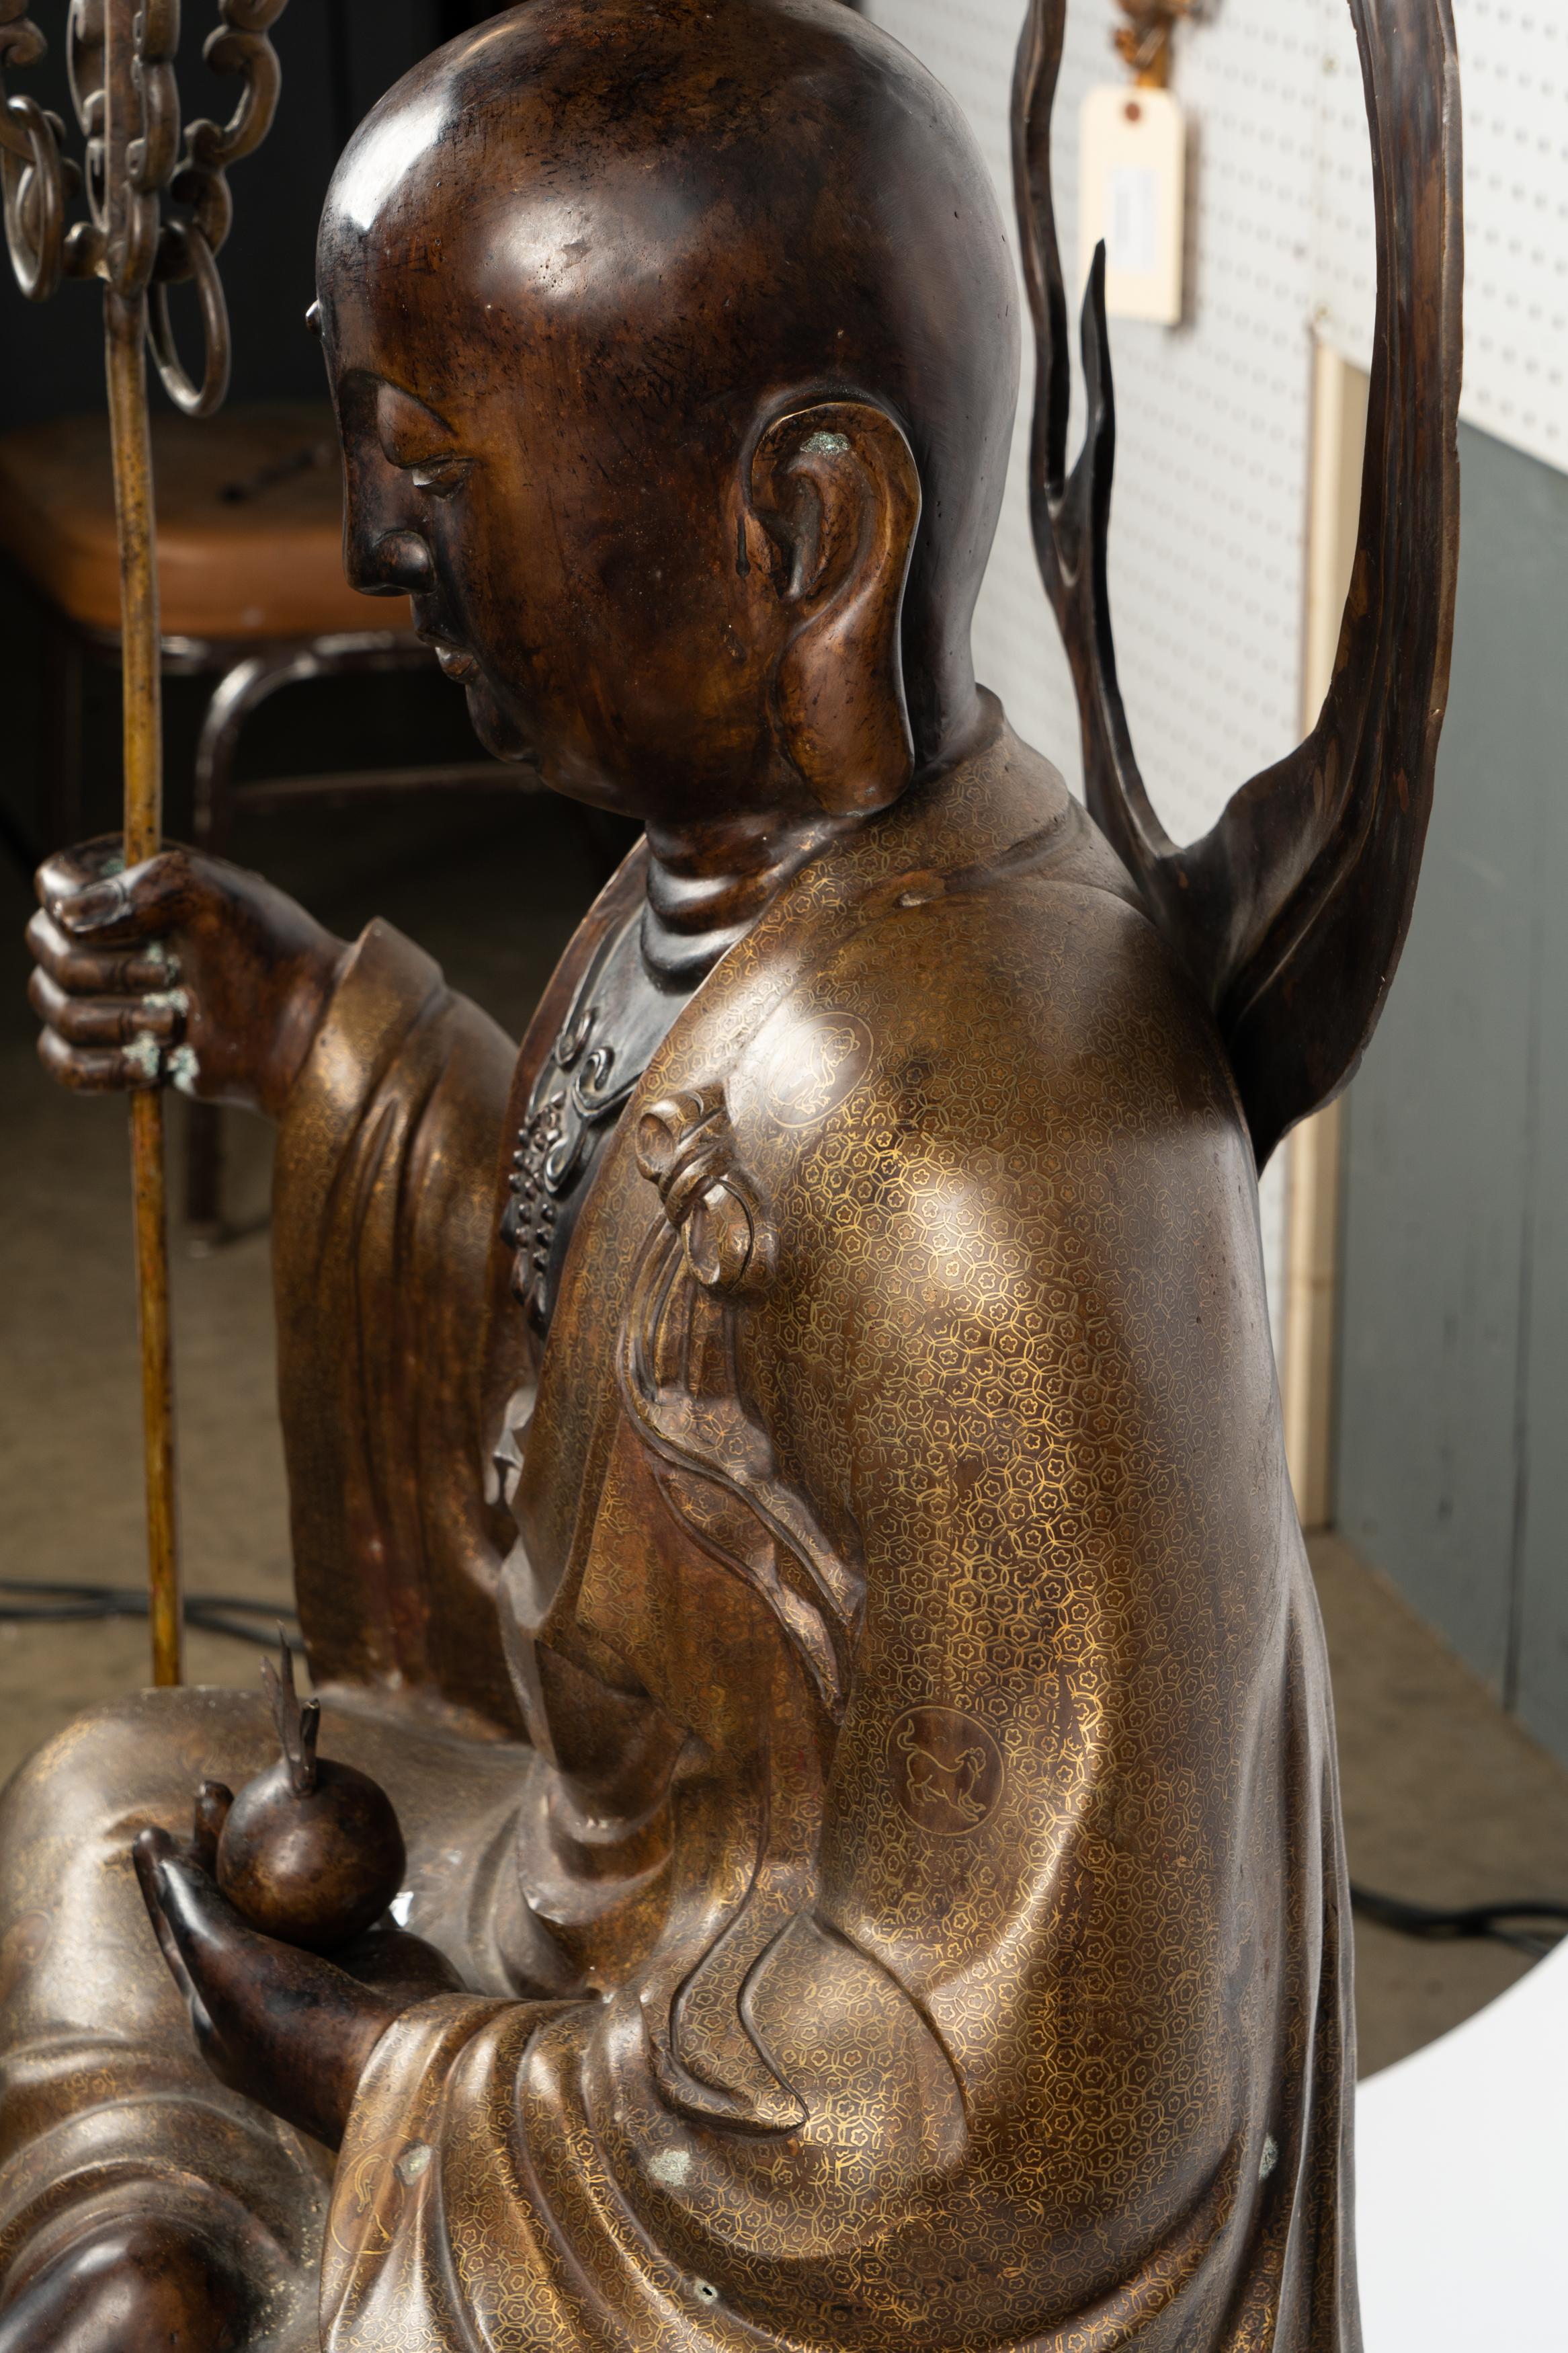 Chinesische Bronze sitzender Buddha Figur das Gewand mit gemusterten Dekoration. Der Stab, die Rückenplatte und die Feuerkugel in der Hand sind zum leichteren Transport abnehmbar.  Maße 58,5h x 24w x 17d
